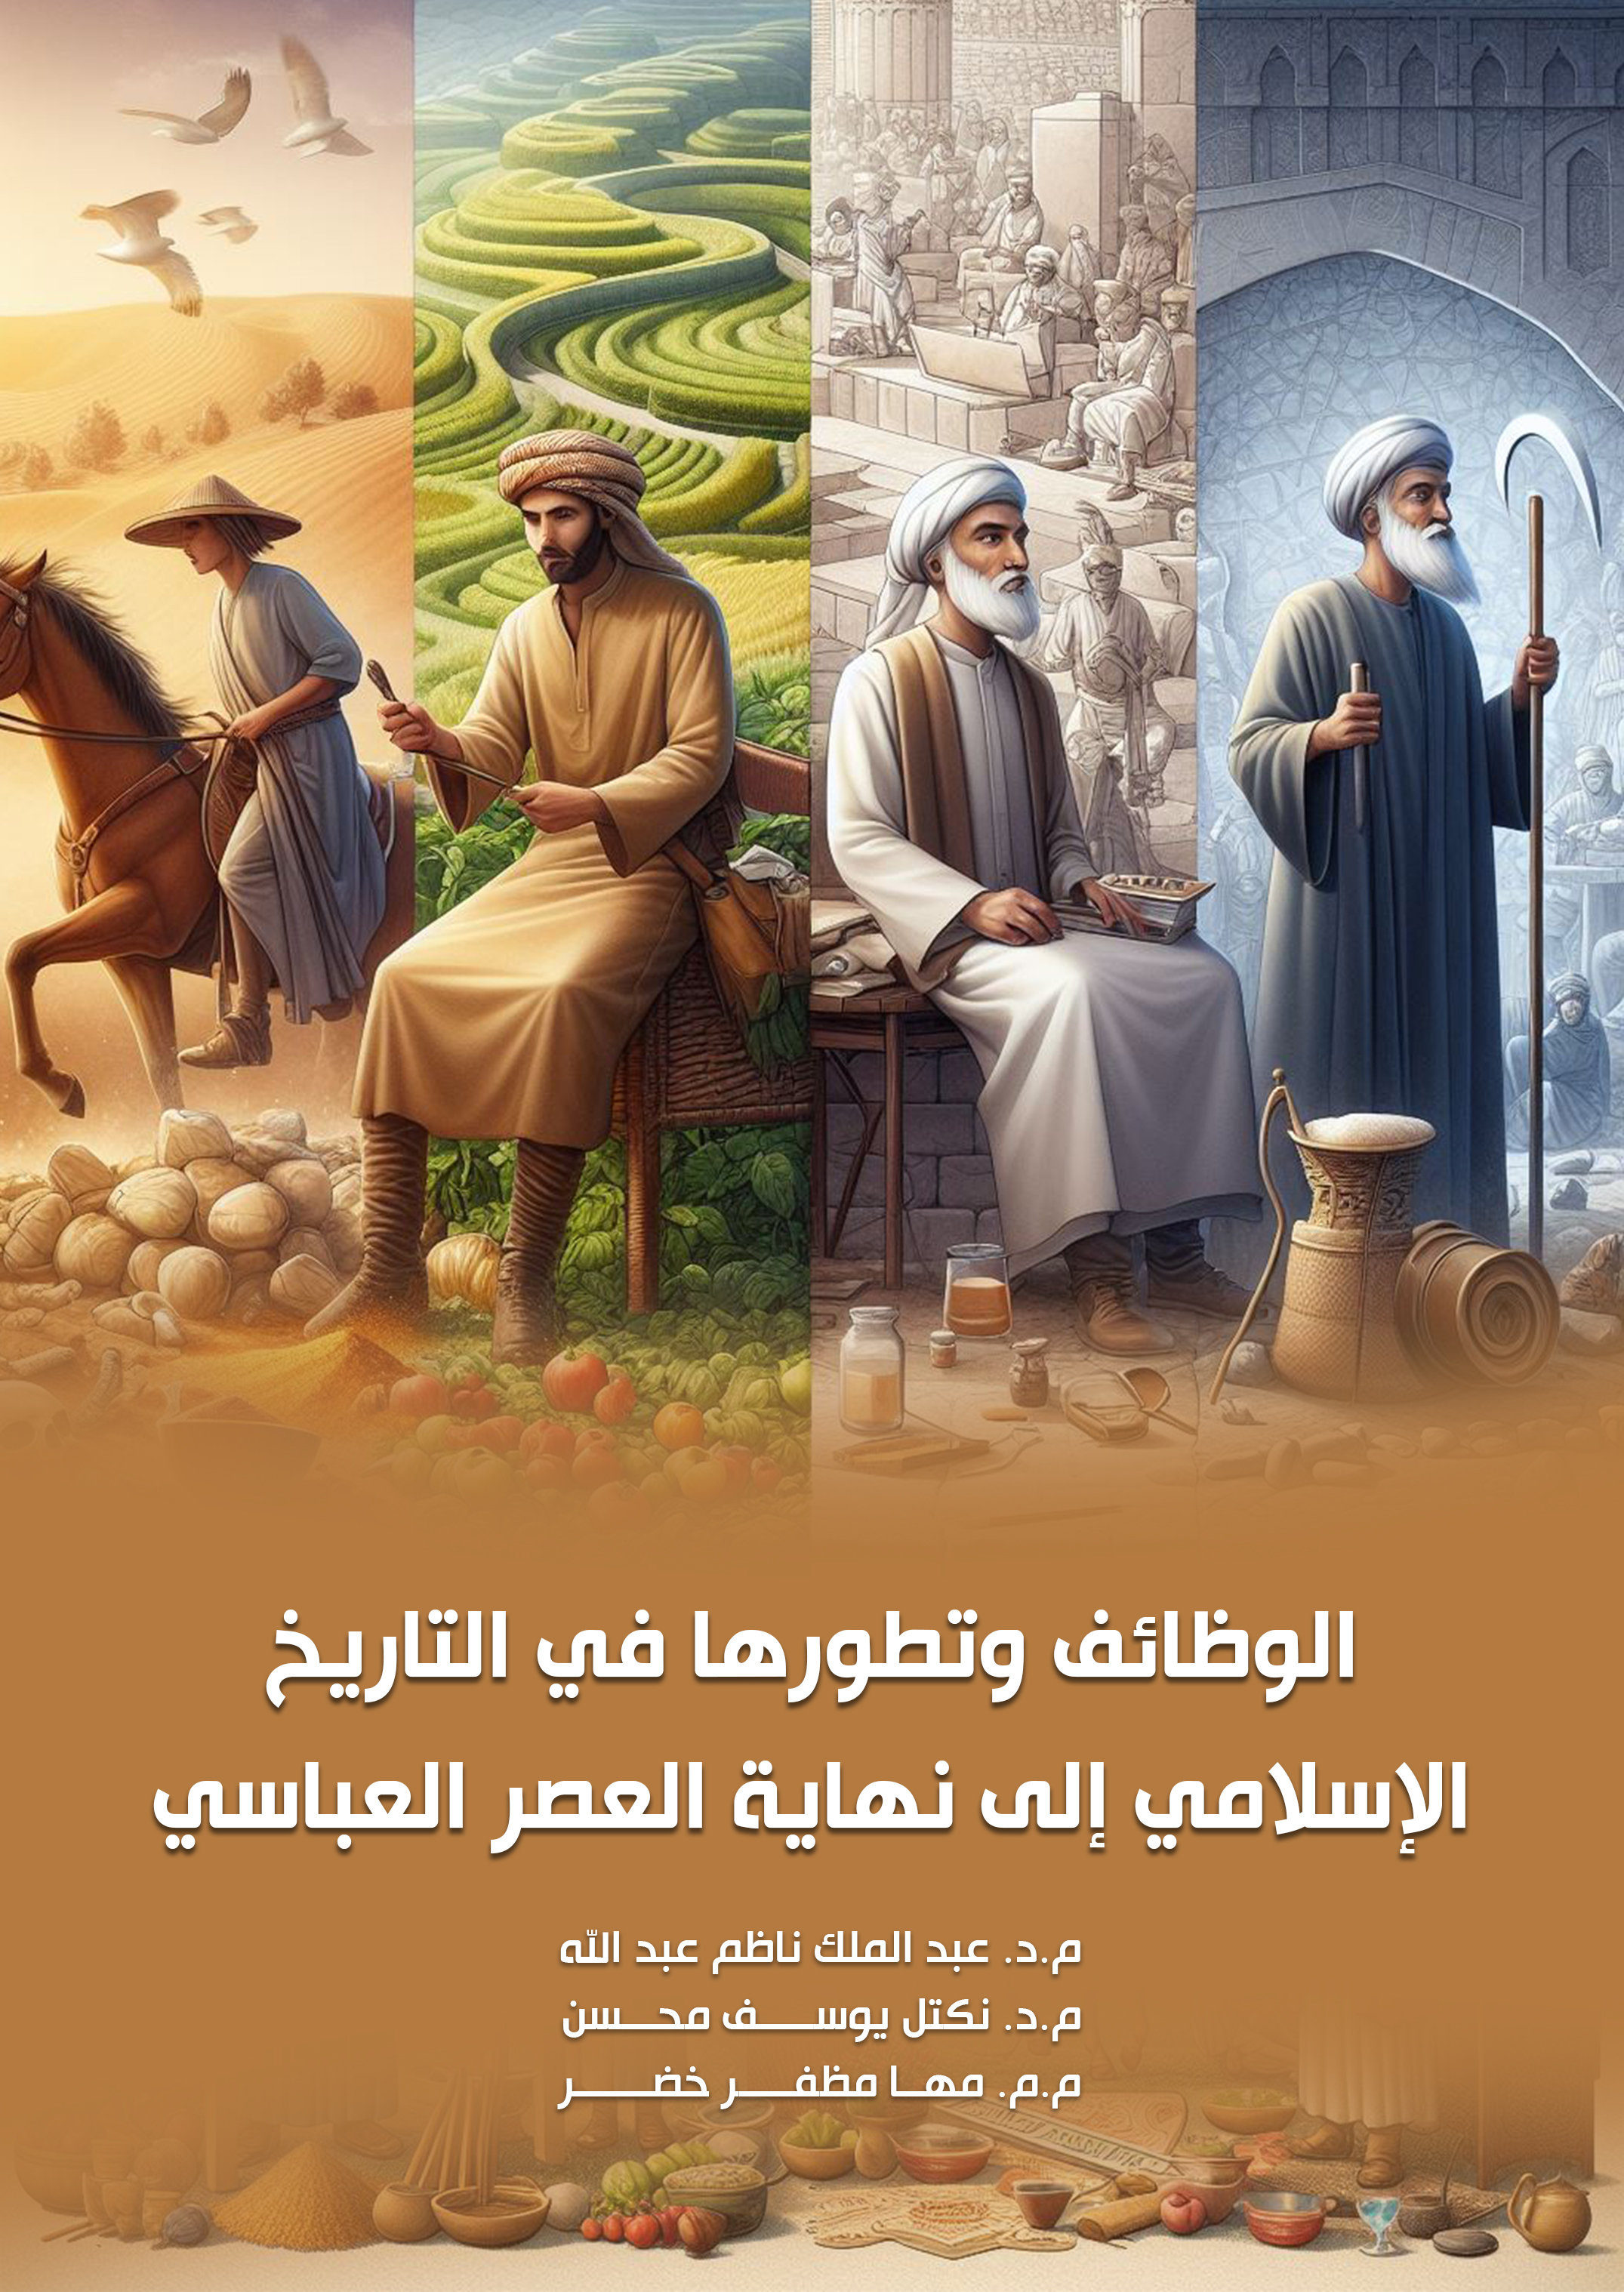 الوظائف وتطورها في التاريخ الإسلامي إلى نهاية العصر العباسي